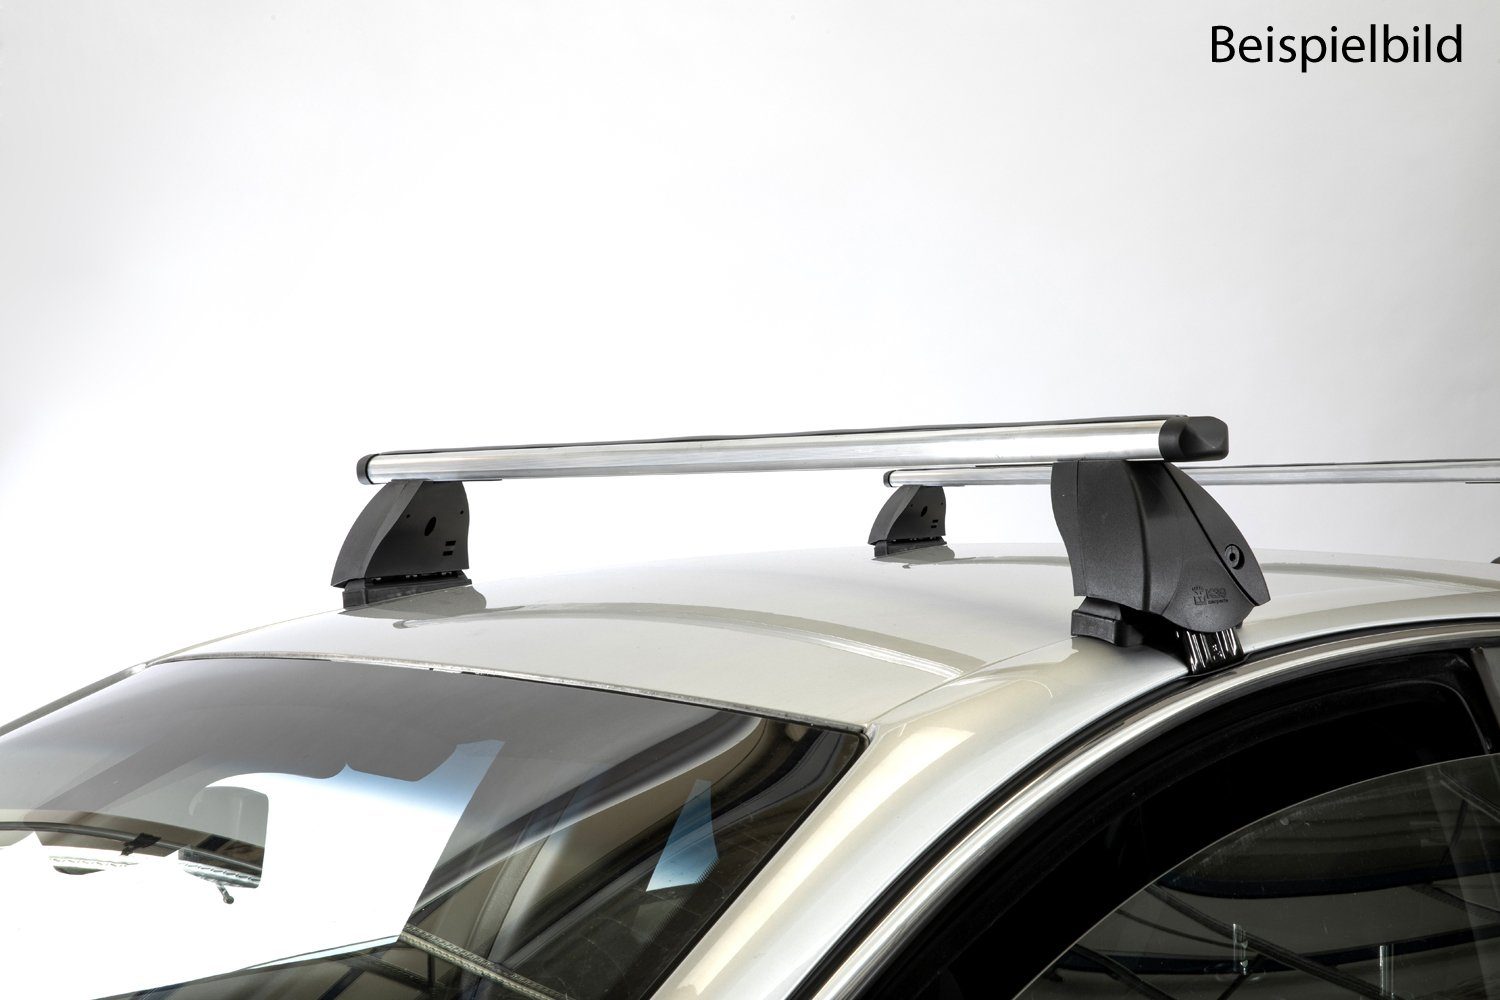 VDP Dachträger (Passend für Ihren Audi A4 (B5/8D) (4Türer) 94-00), Dachträger K1 PRO Aluminium kompatibel mit Audi A4 (B5/8D) (4Türer) 94-00